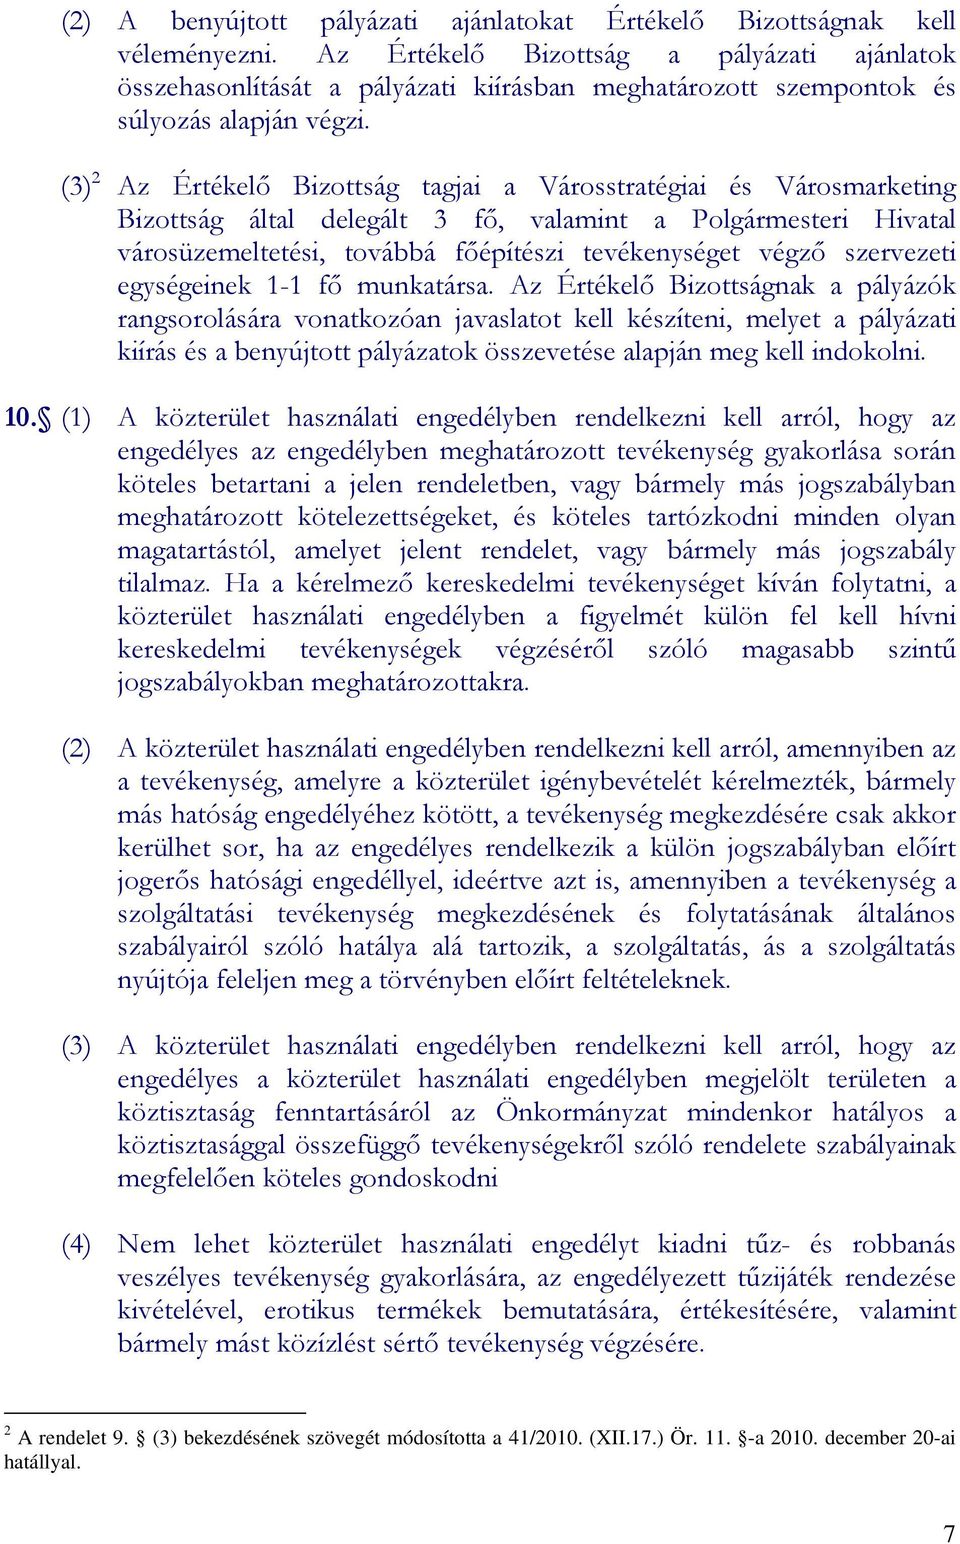 (3) 2 Az Értékelı Bizottság tagjai a Városstratégiai és Városmarketing Bizottság által delegált 3 fı, valamint a Polgármesteri Hivatal városüzemeltetési, továbbá fıépítészi tevékenységet végzı